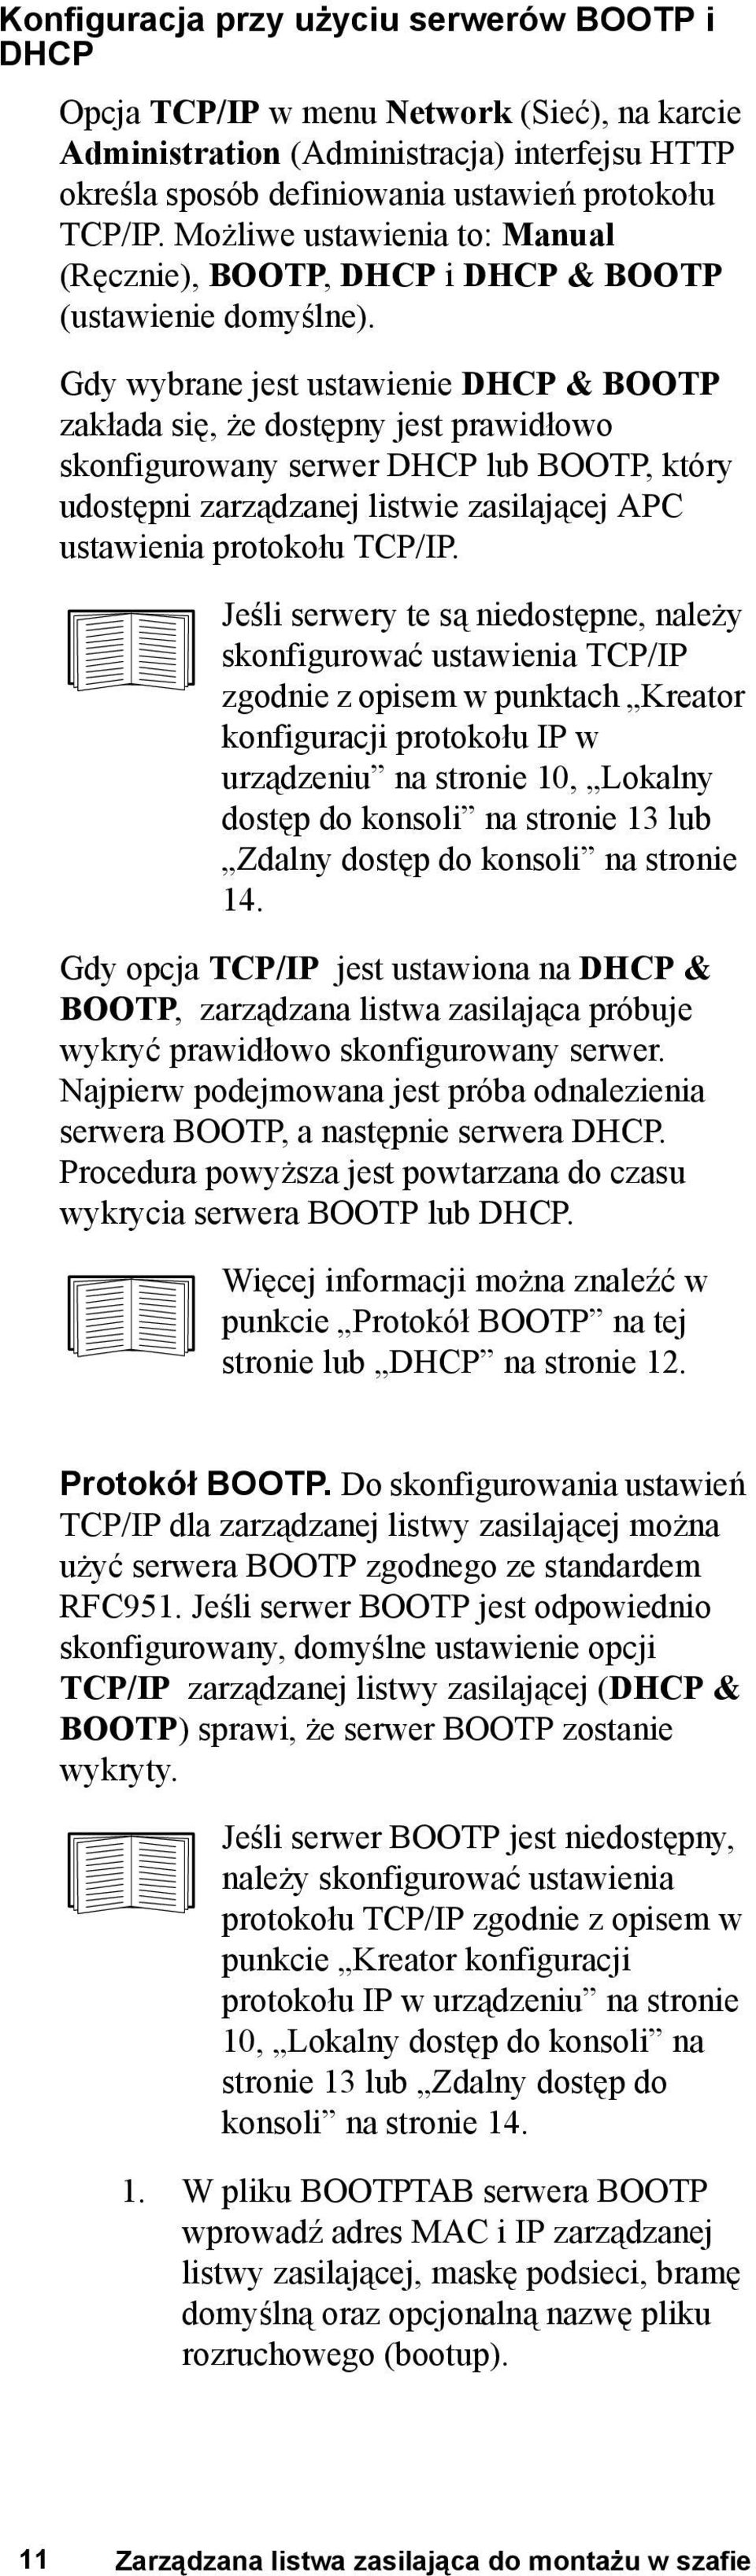 Gdy wybrane jest ustawienie DHCP & BOOTP zakłada się, że dostępny jest prawidłowo skonfigurowany serwer DHCP lub BOOTP, który udostępni zarządzanej listwie zasilającej APC ustawienia protokołu TCP/IP.